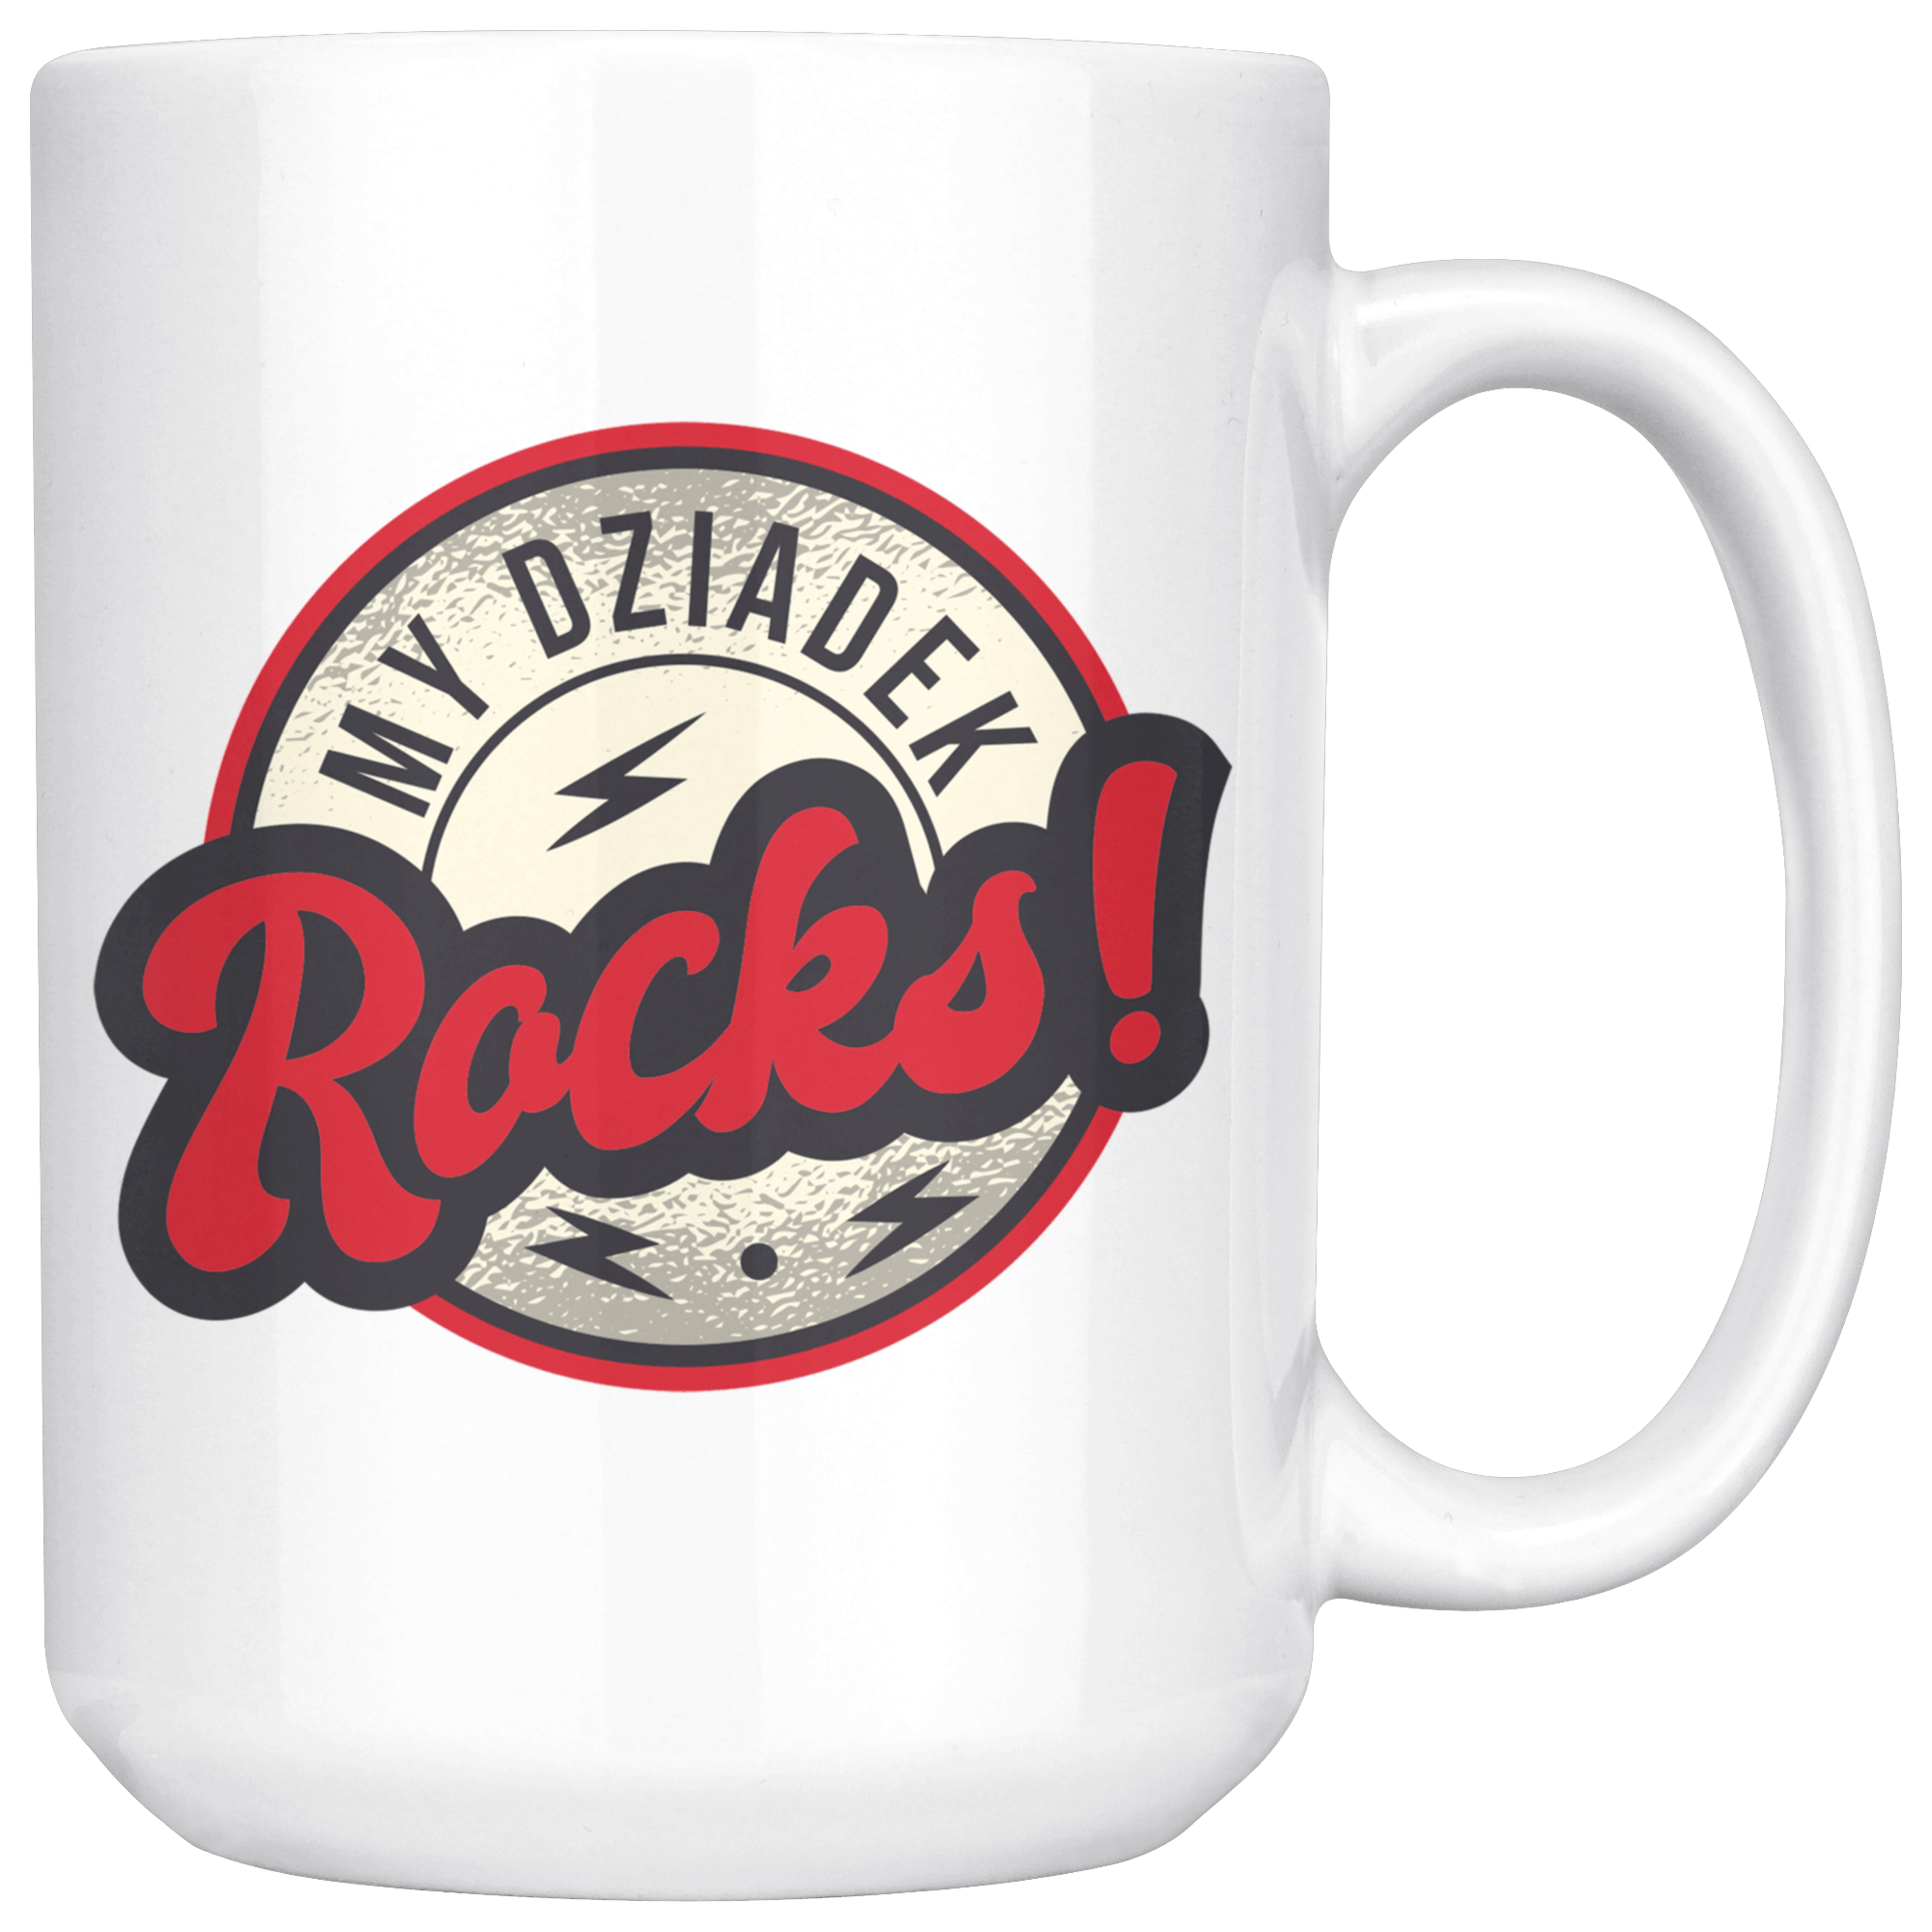 My Dziadek Rocks Coffee Mug Drinkware teelaunch White  